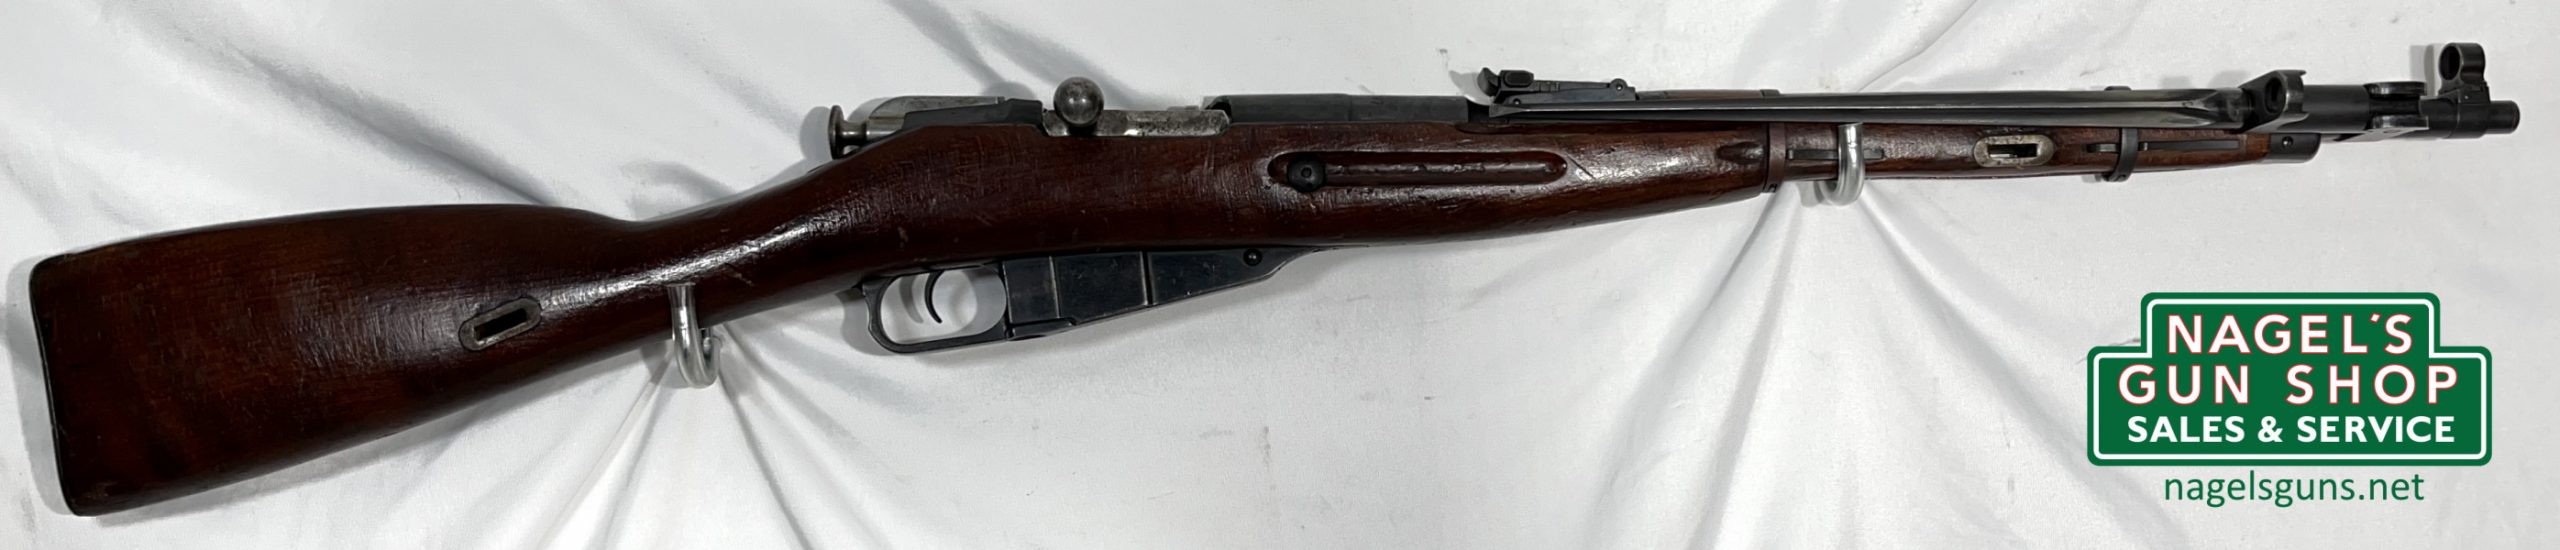 Polish M1944 Mosin Nagant 7.62x54r Rifle